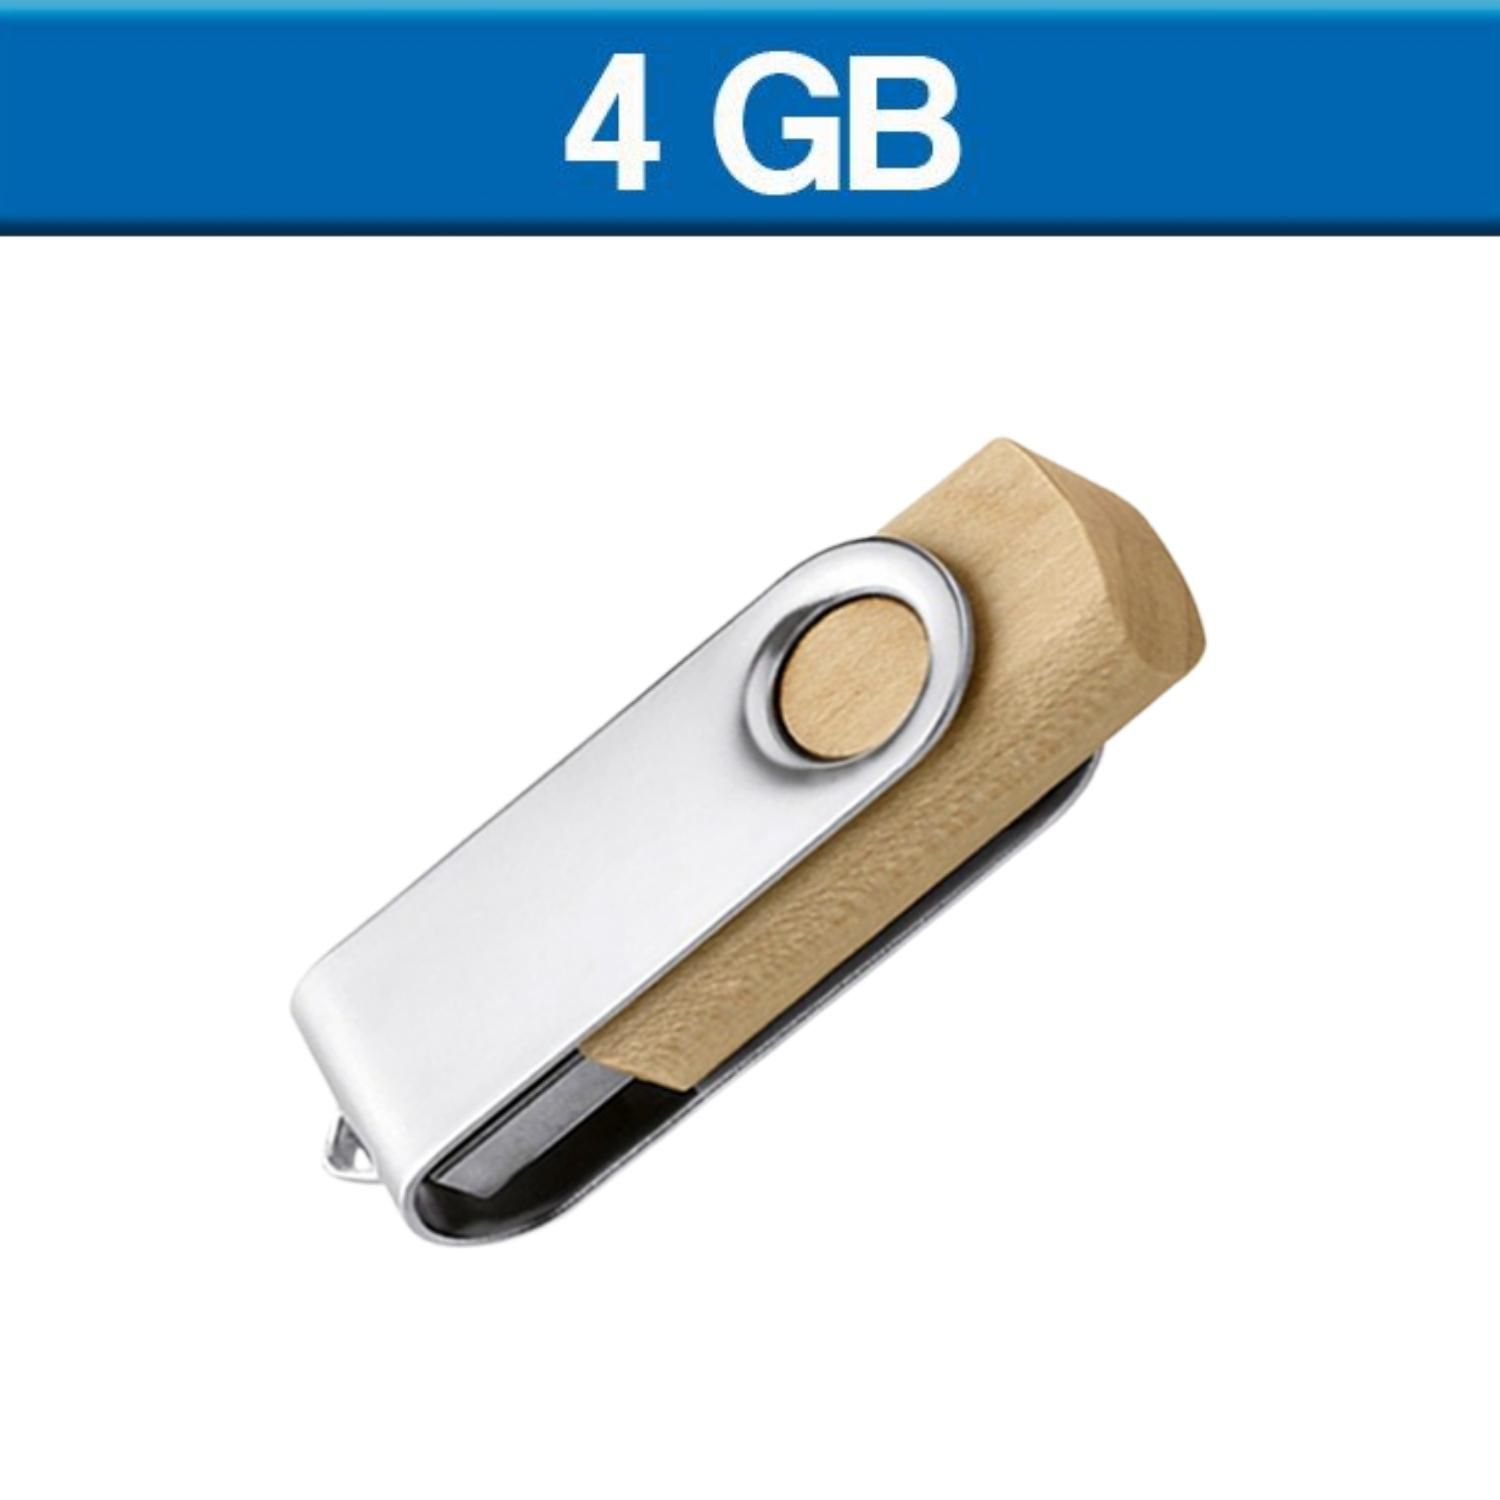 USB Giratoria London con Madera, capacidad de 4GB. Incluye cordón en color blanco. 